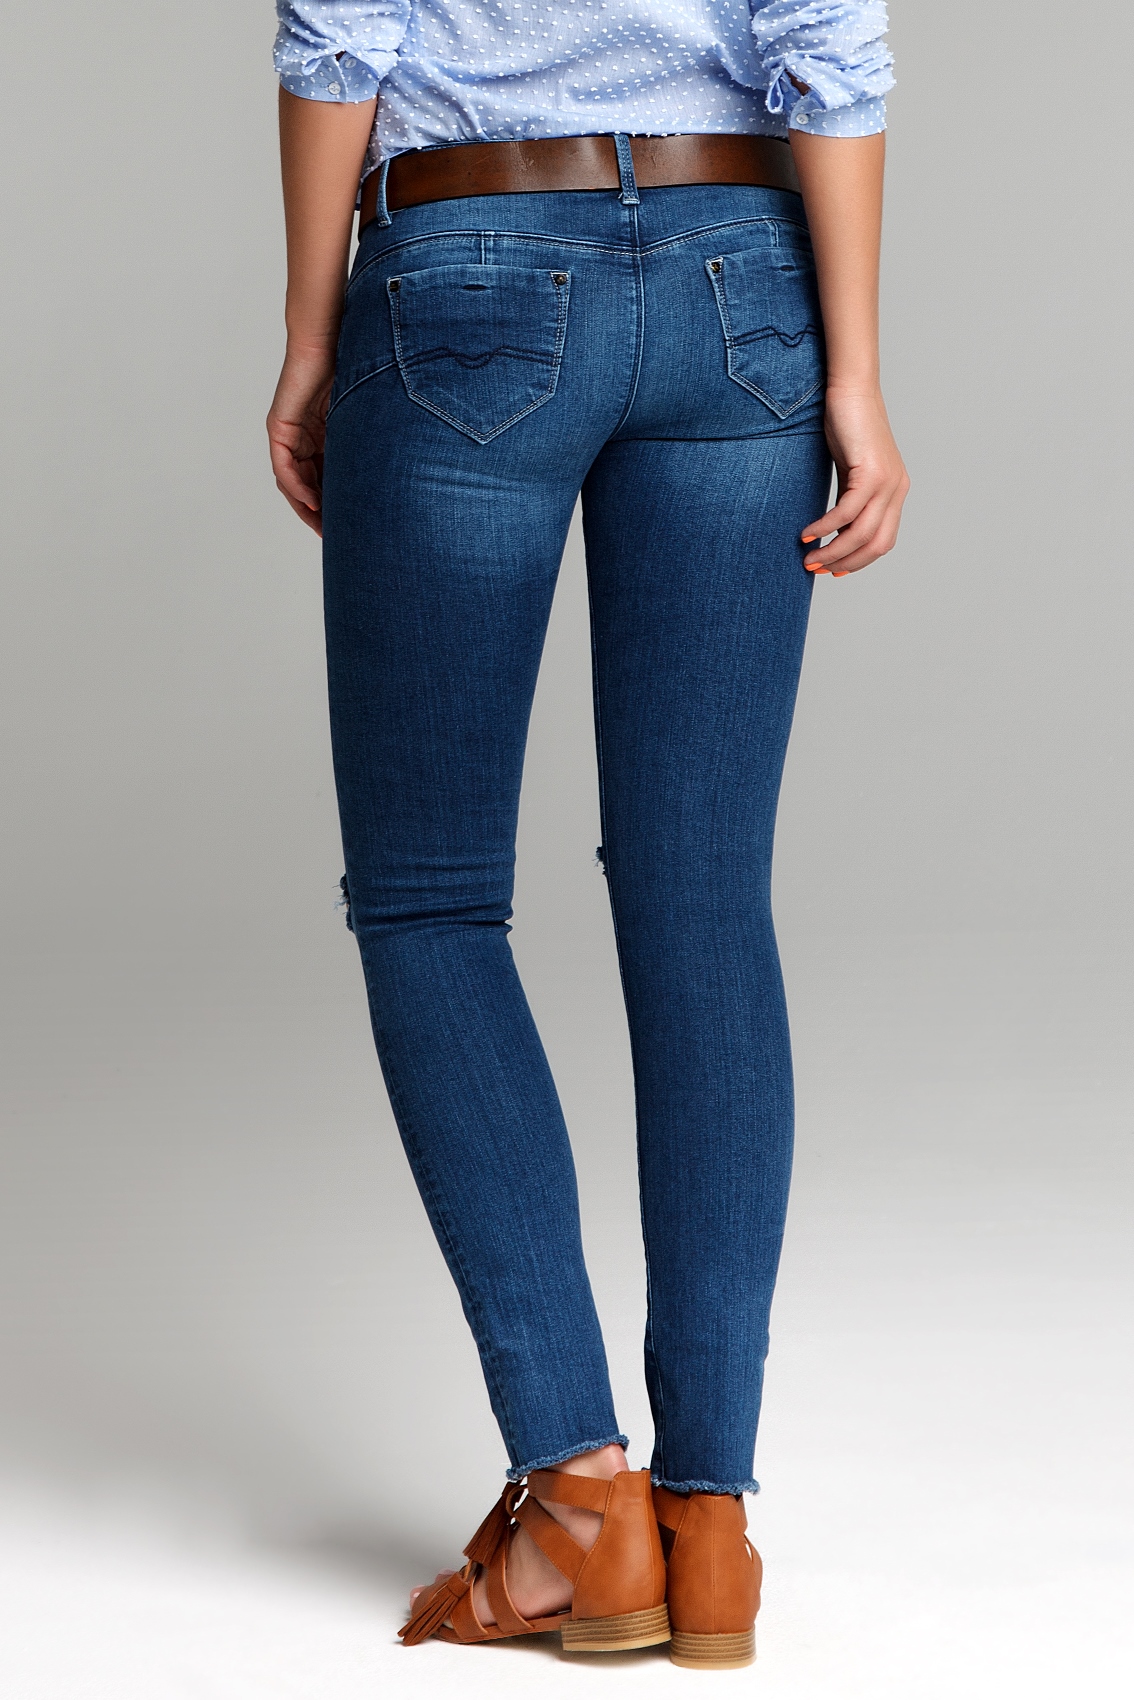 Вайлдберриз джинсы женские летние. Джинсы женские. Красивые женские джинсы. Брендовые джинсы женские. Длинные джинсы женские.